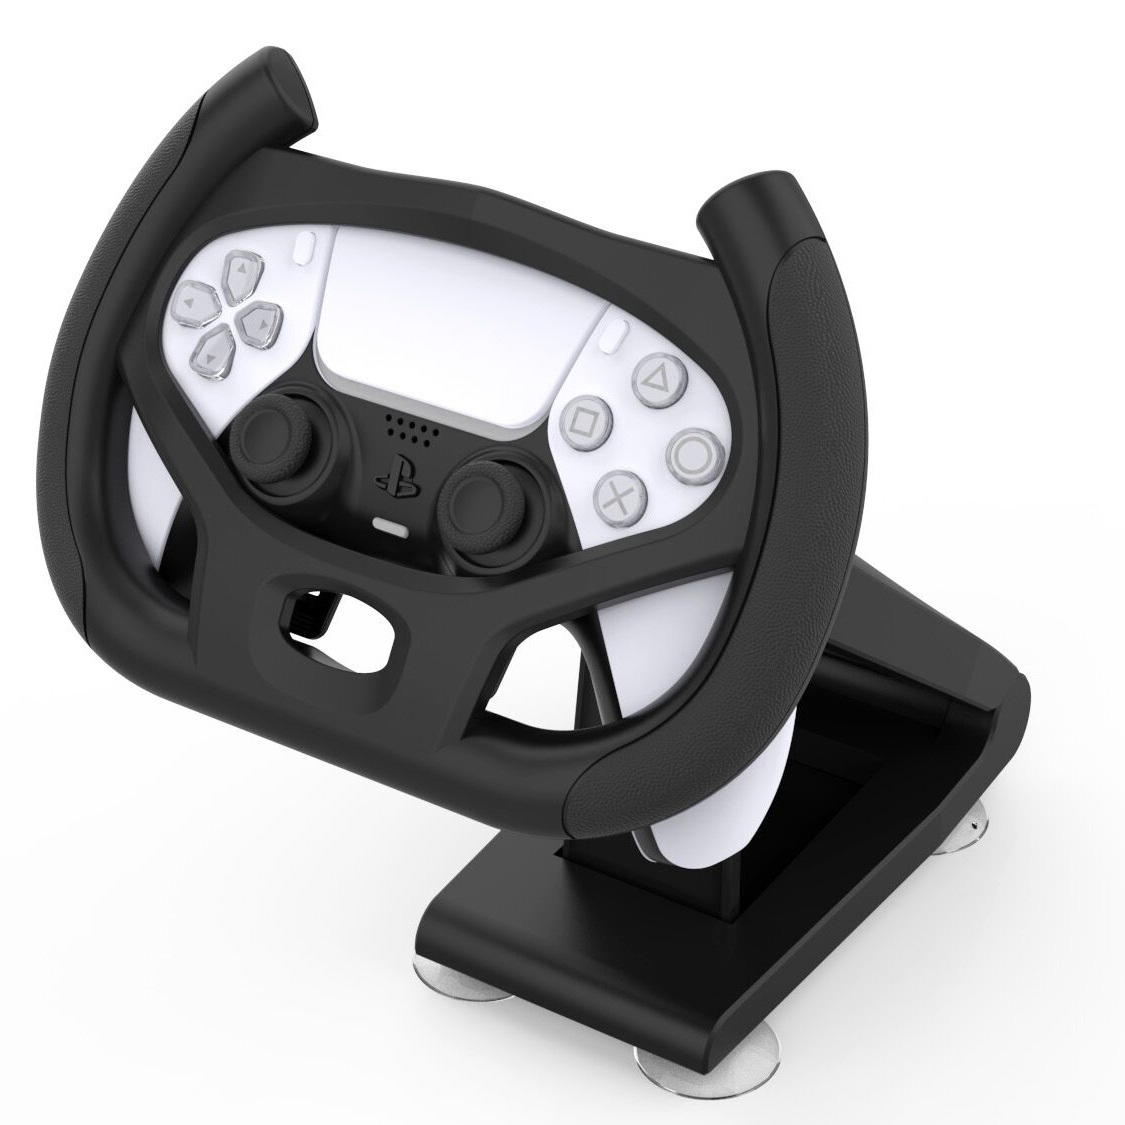 PS5 Lenkrad - Werden PS4 Lenkräder kompatibel sein?✓